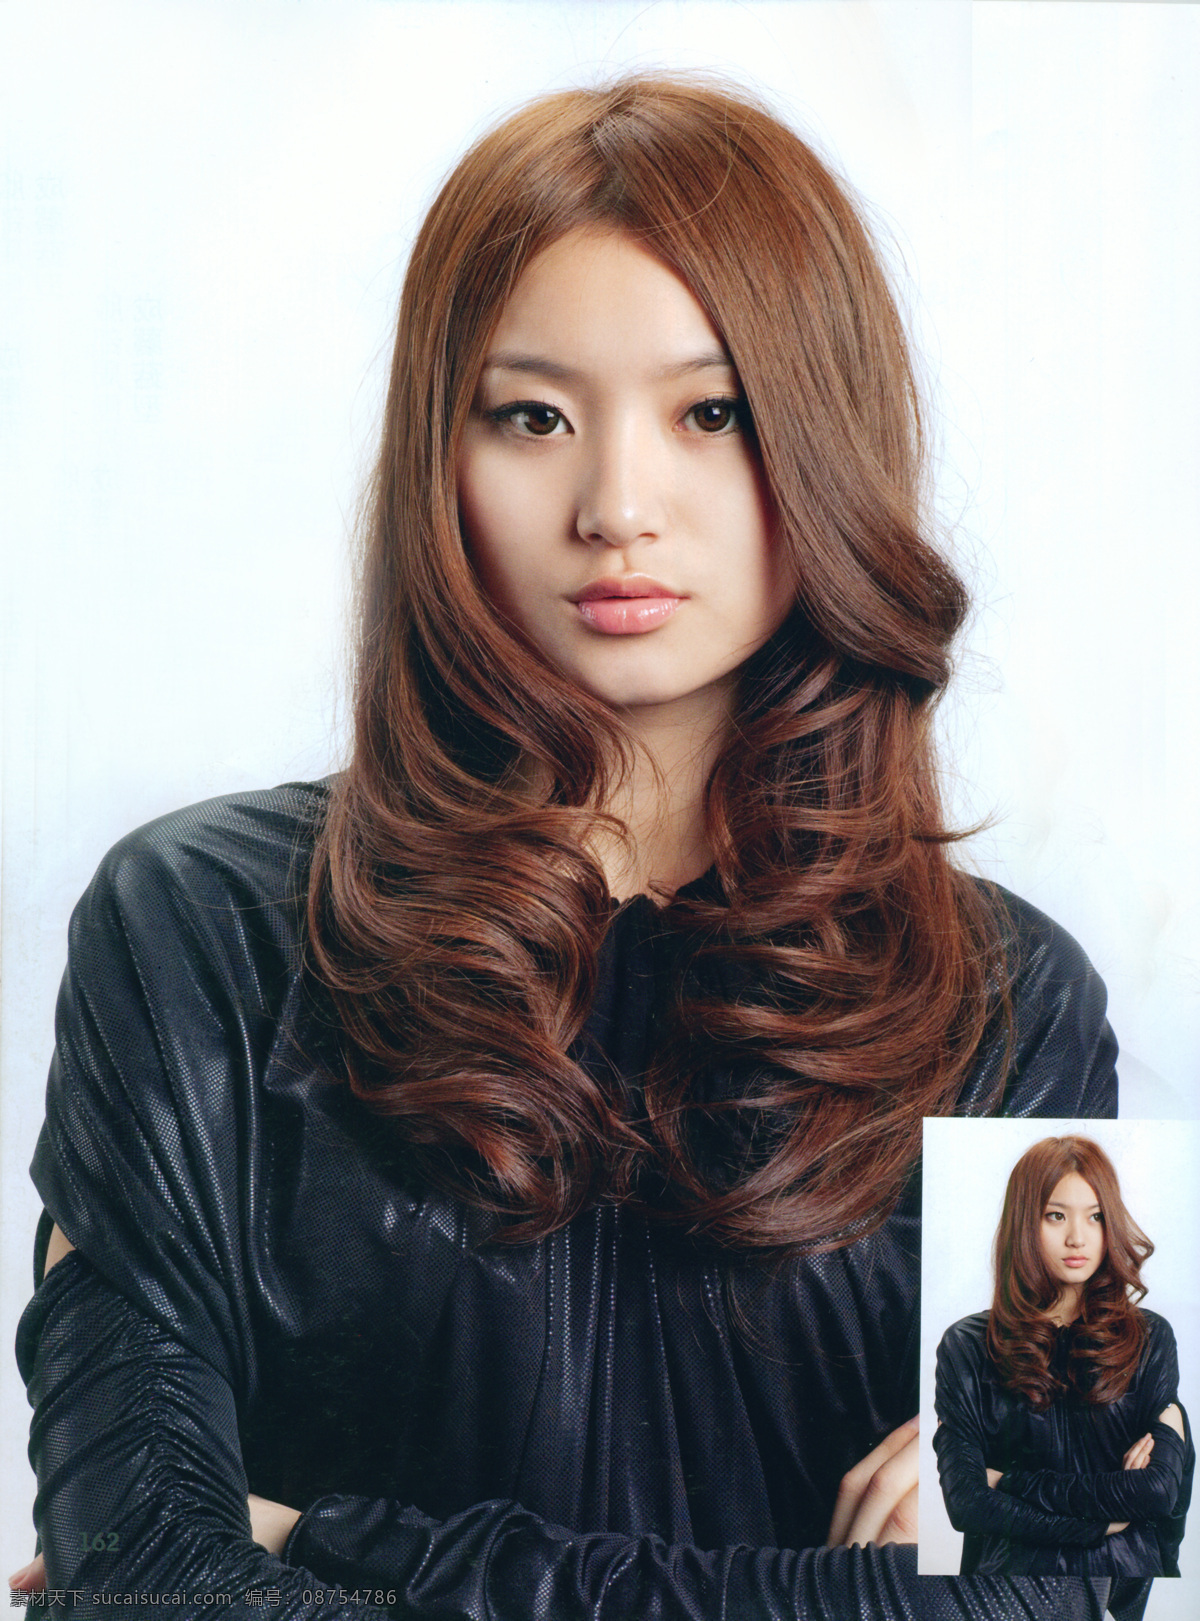 2010 年 最新 发型 美发 最新发型 烫发 染发 人物图库 女性女人 摄影图库 长发 卷发